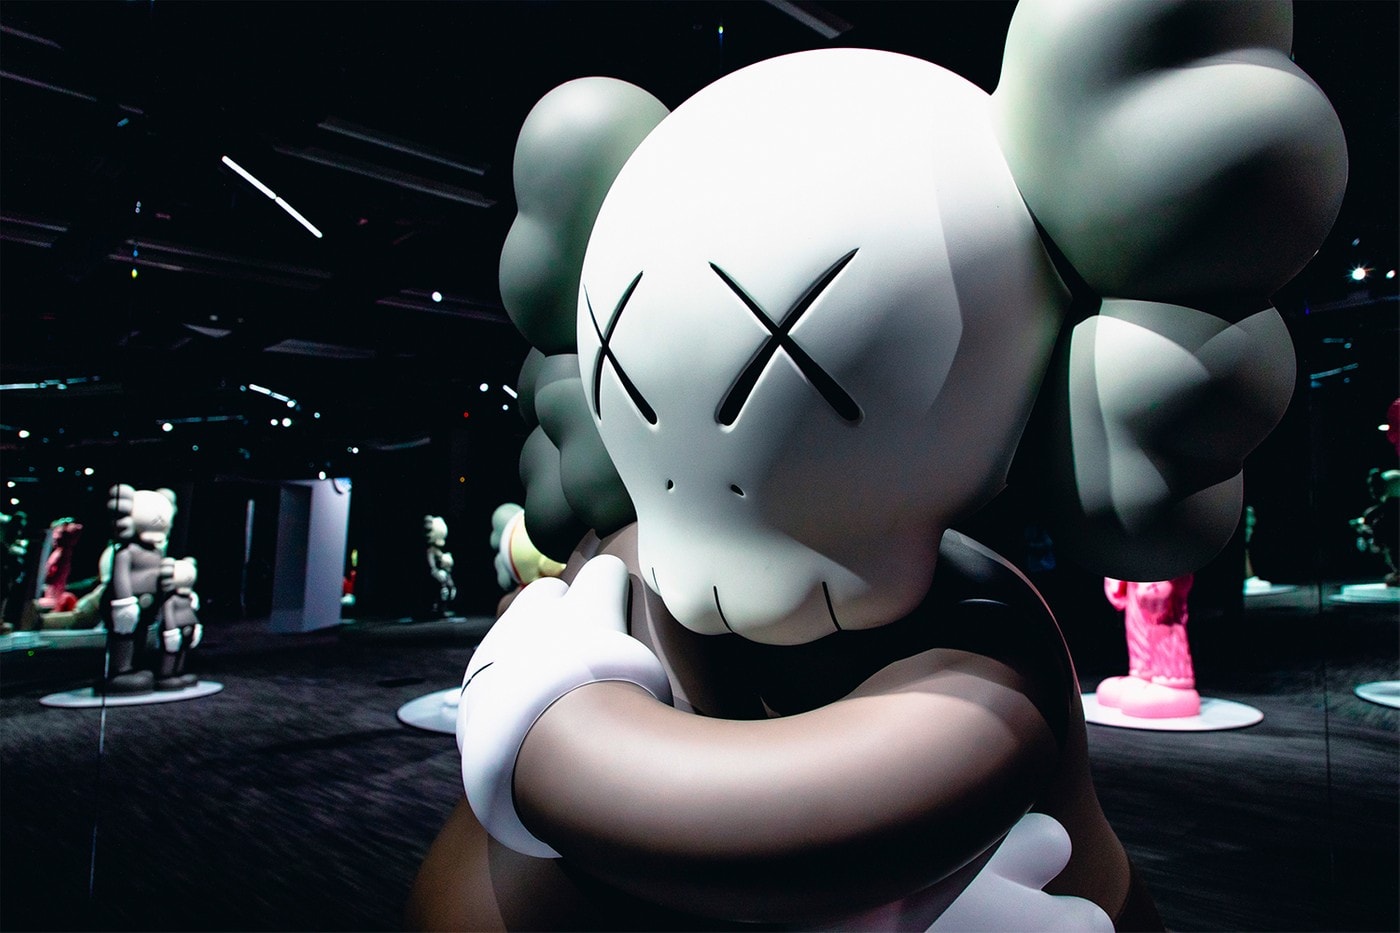 KAWS: ALONG THE WAY Hong Kong Companion Exhibition Sculpture Grey Cream Black